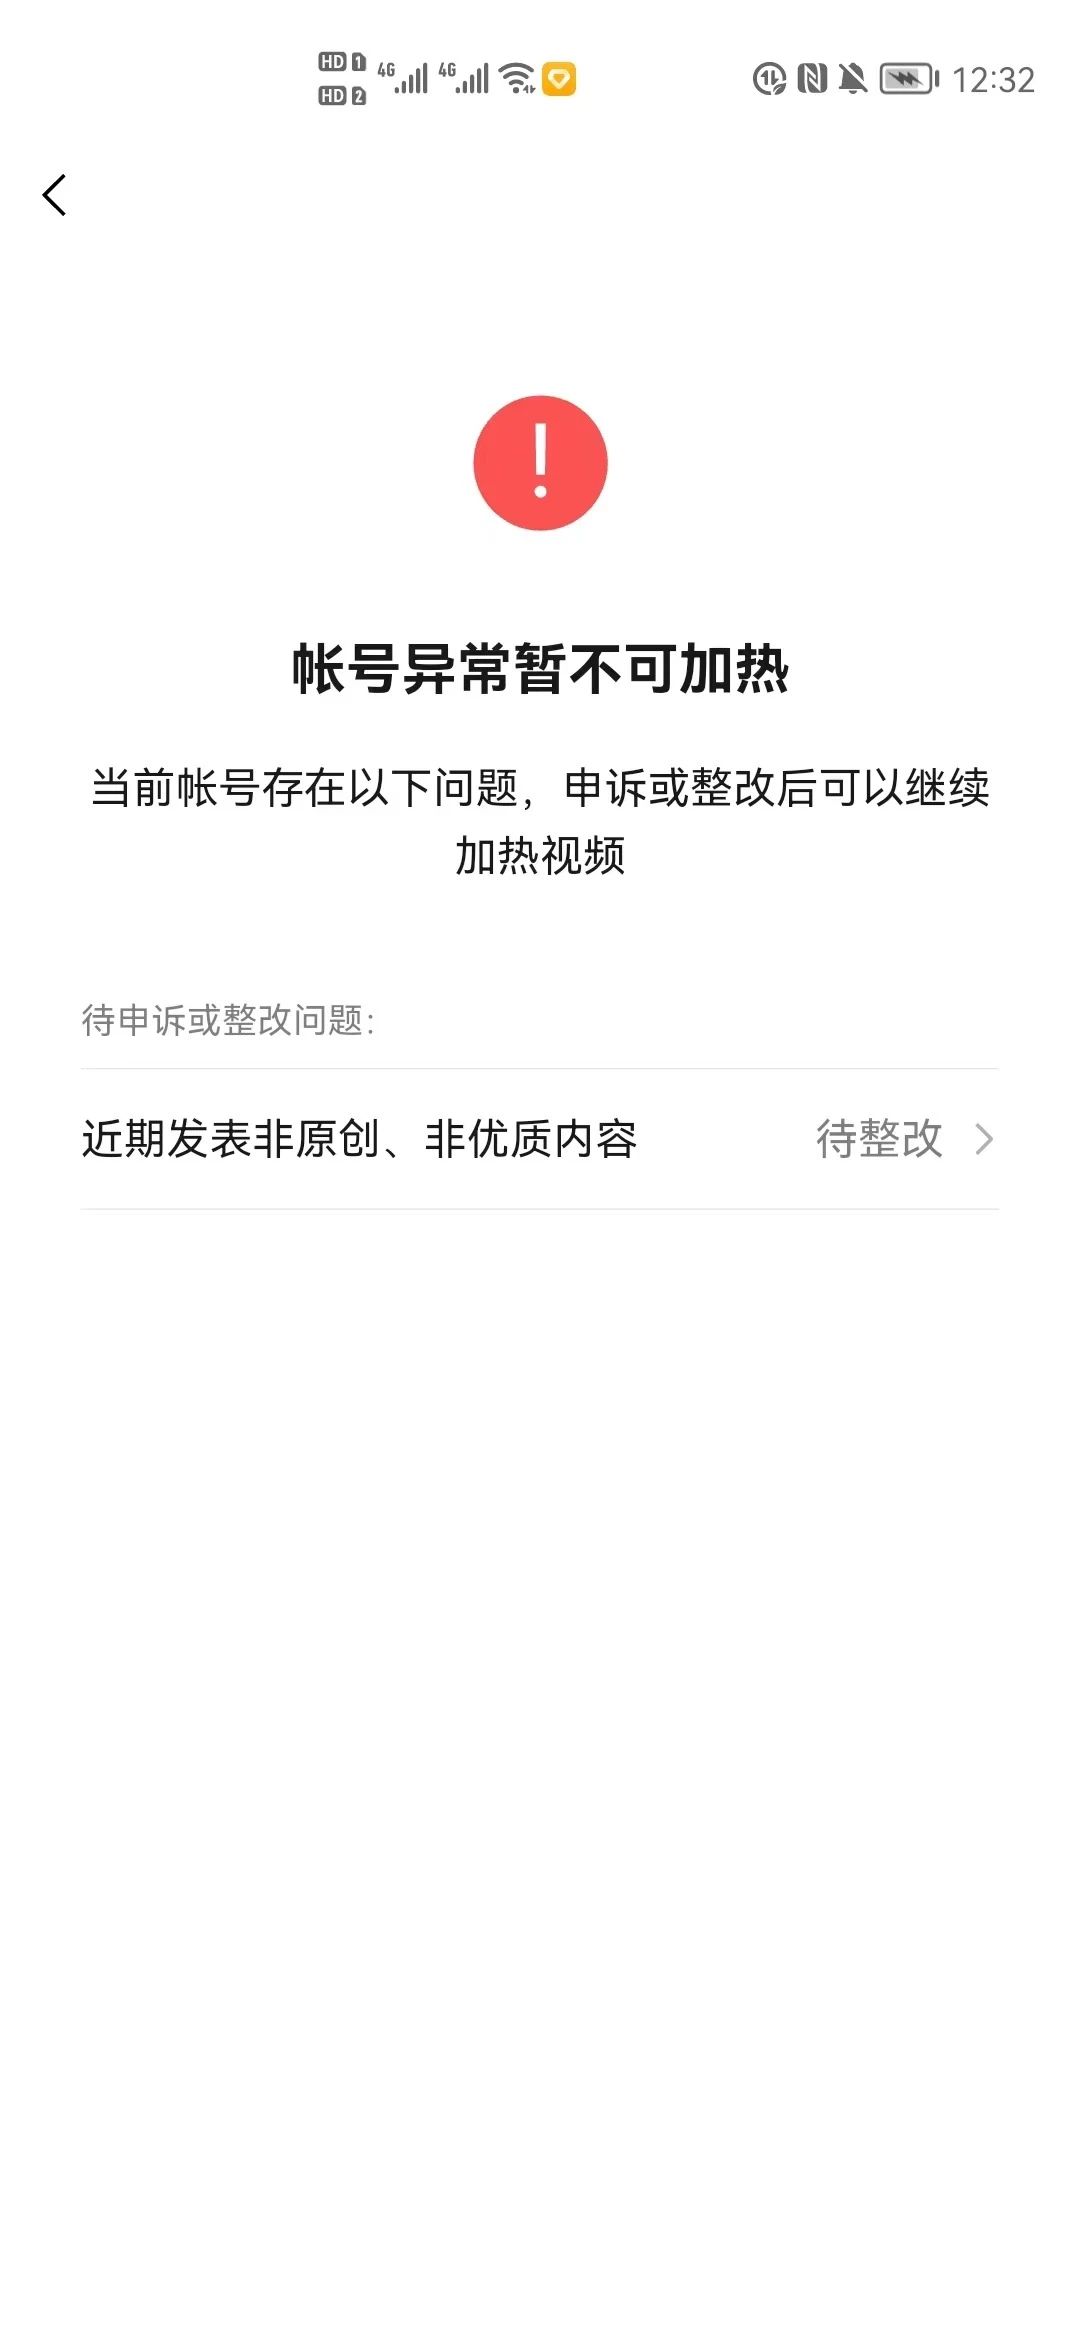 发行版 经常上传不了附件 · Issue #IFTUL · 开源中国/Gitee Feedback - Gitee.com